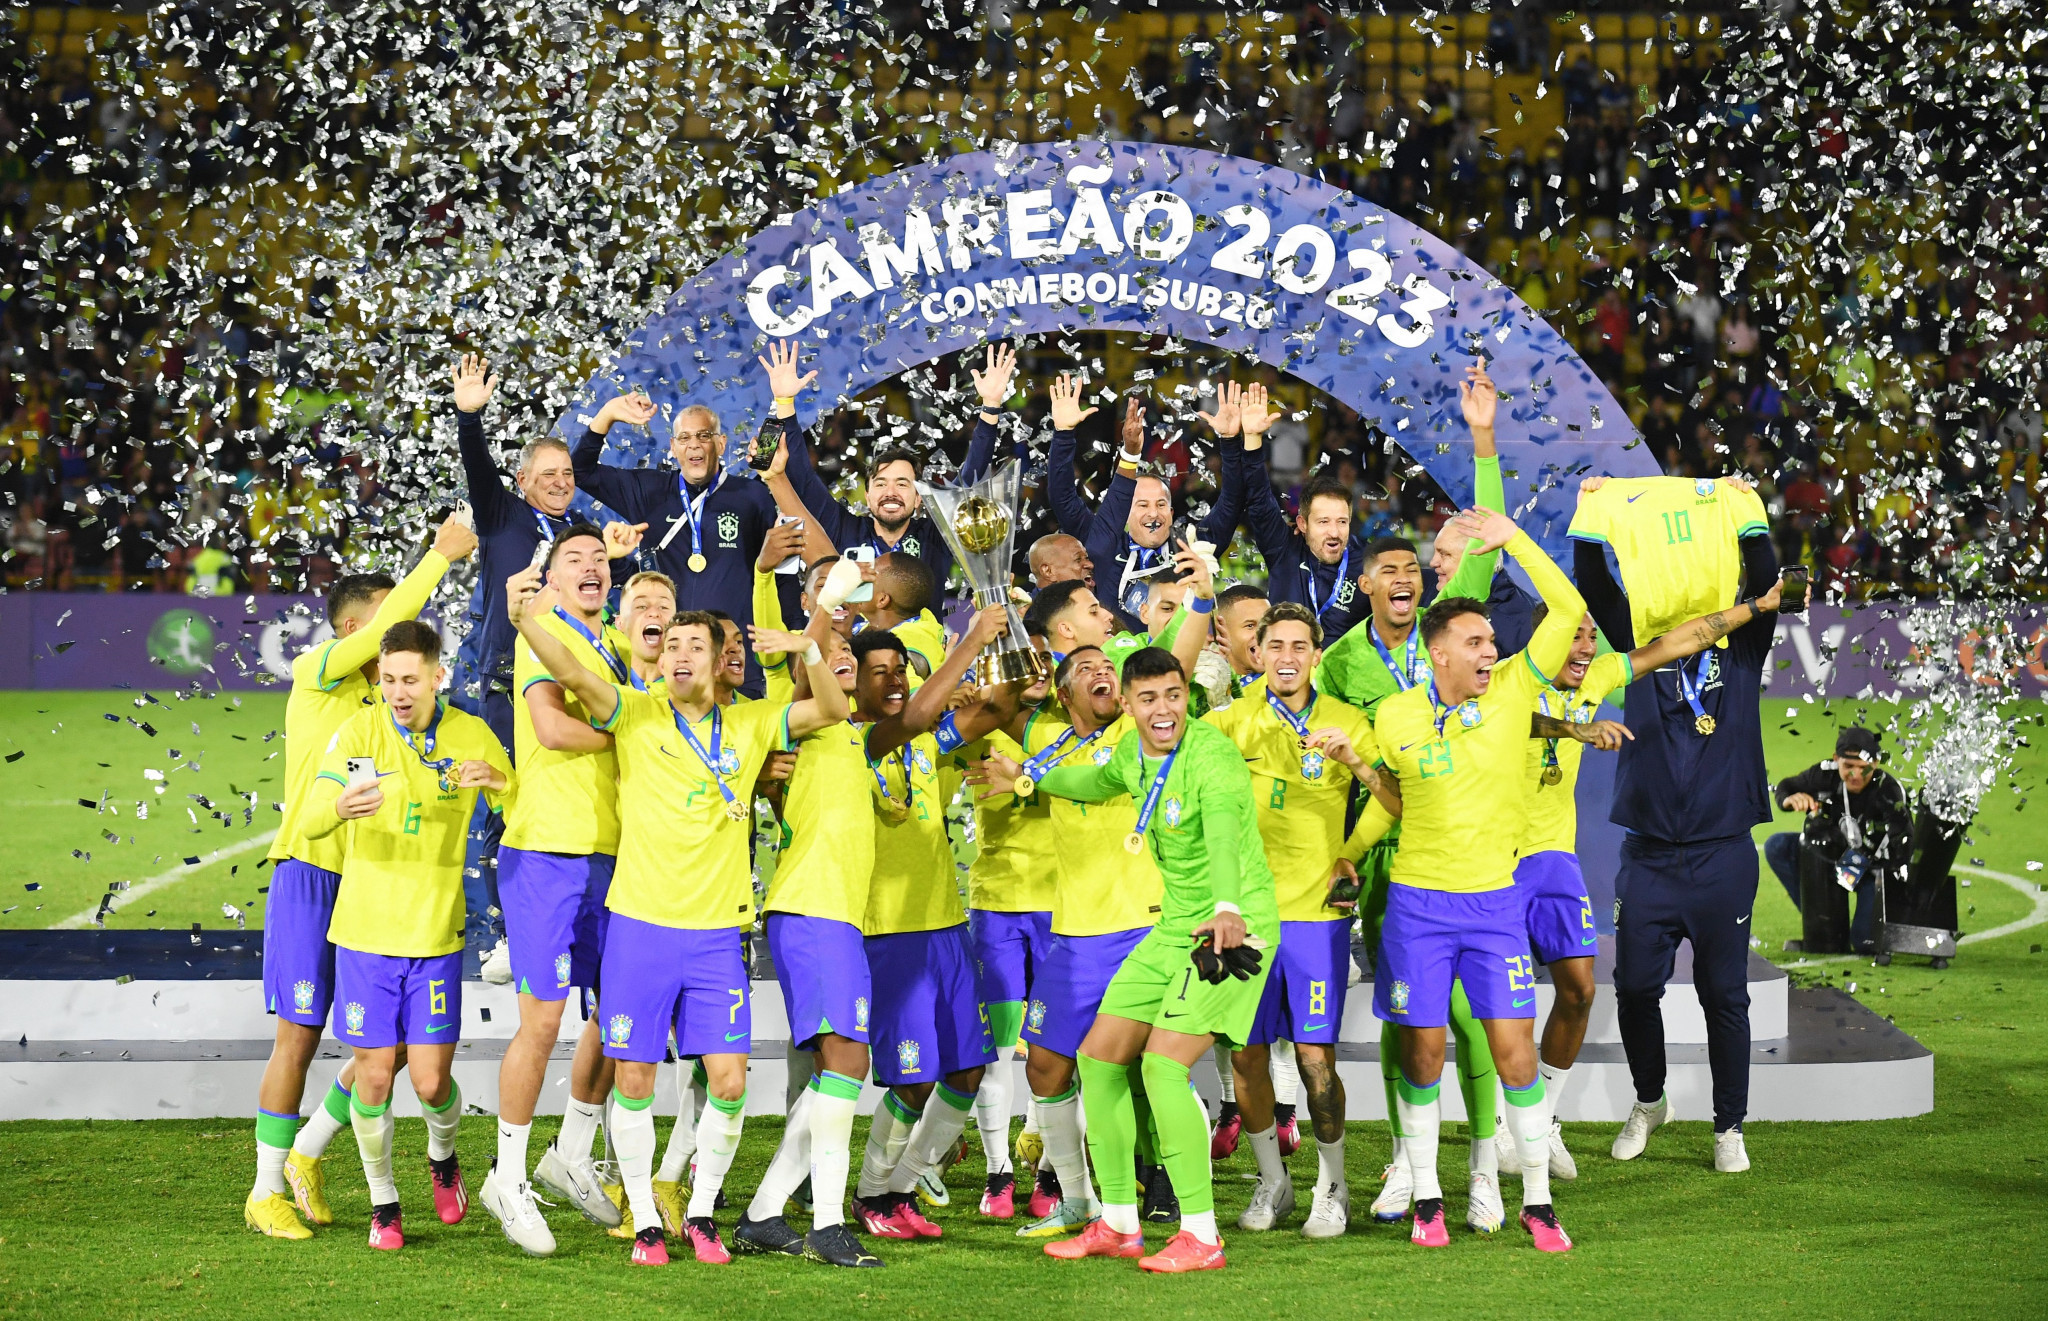 Brazil match schedule 2023: Next games, fixtures for national football team